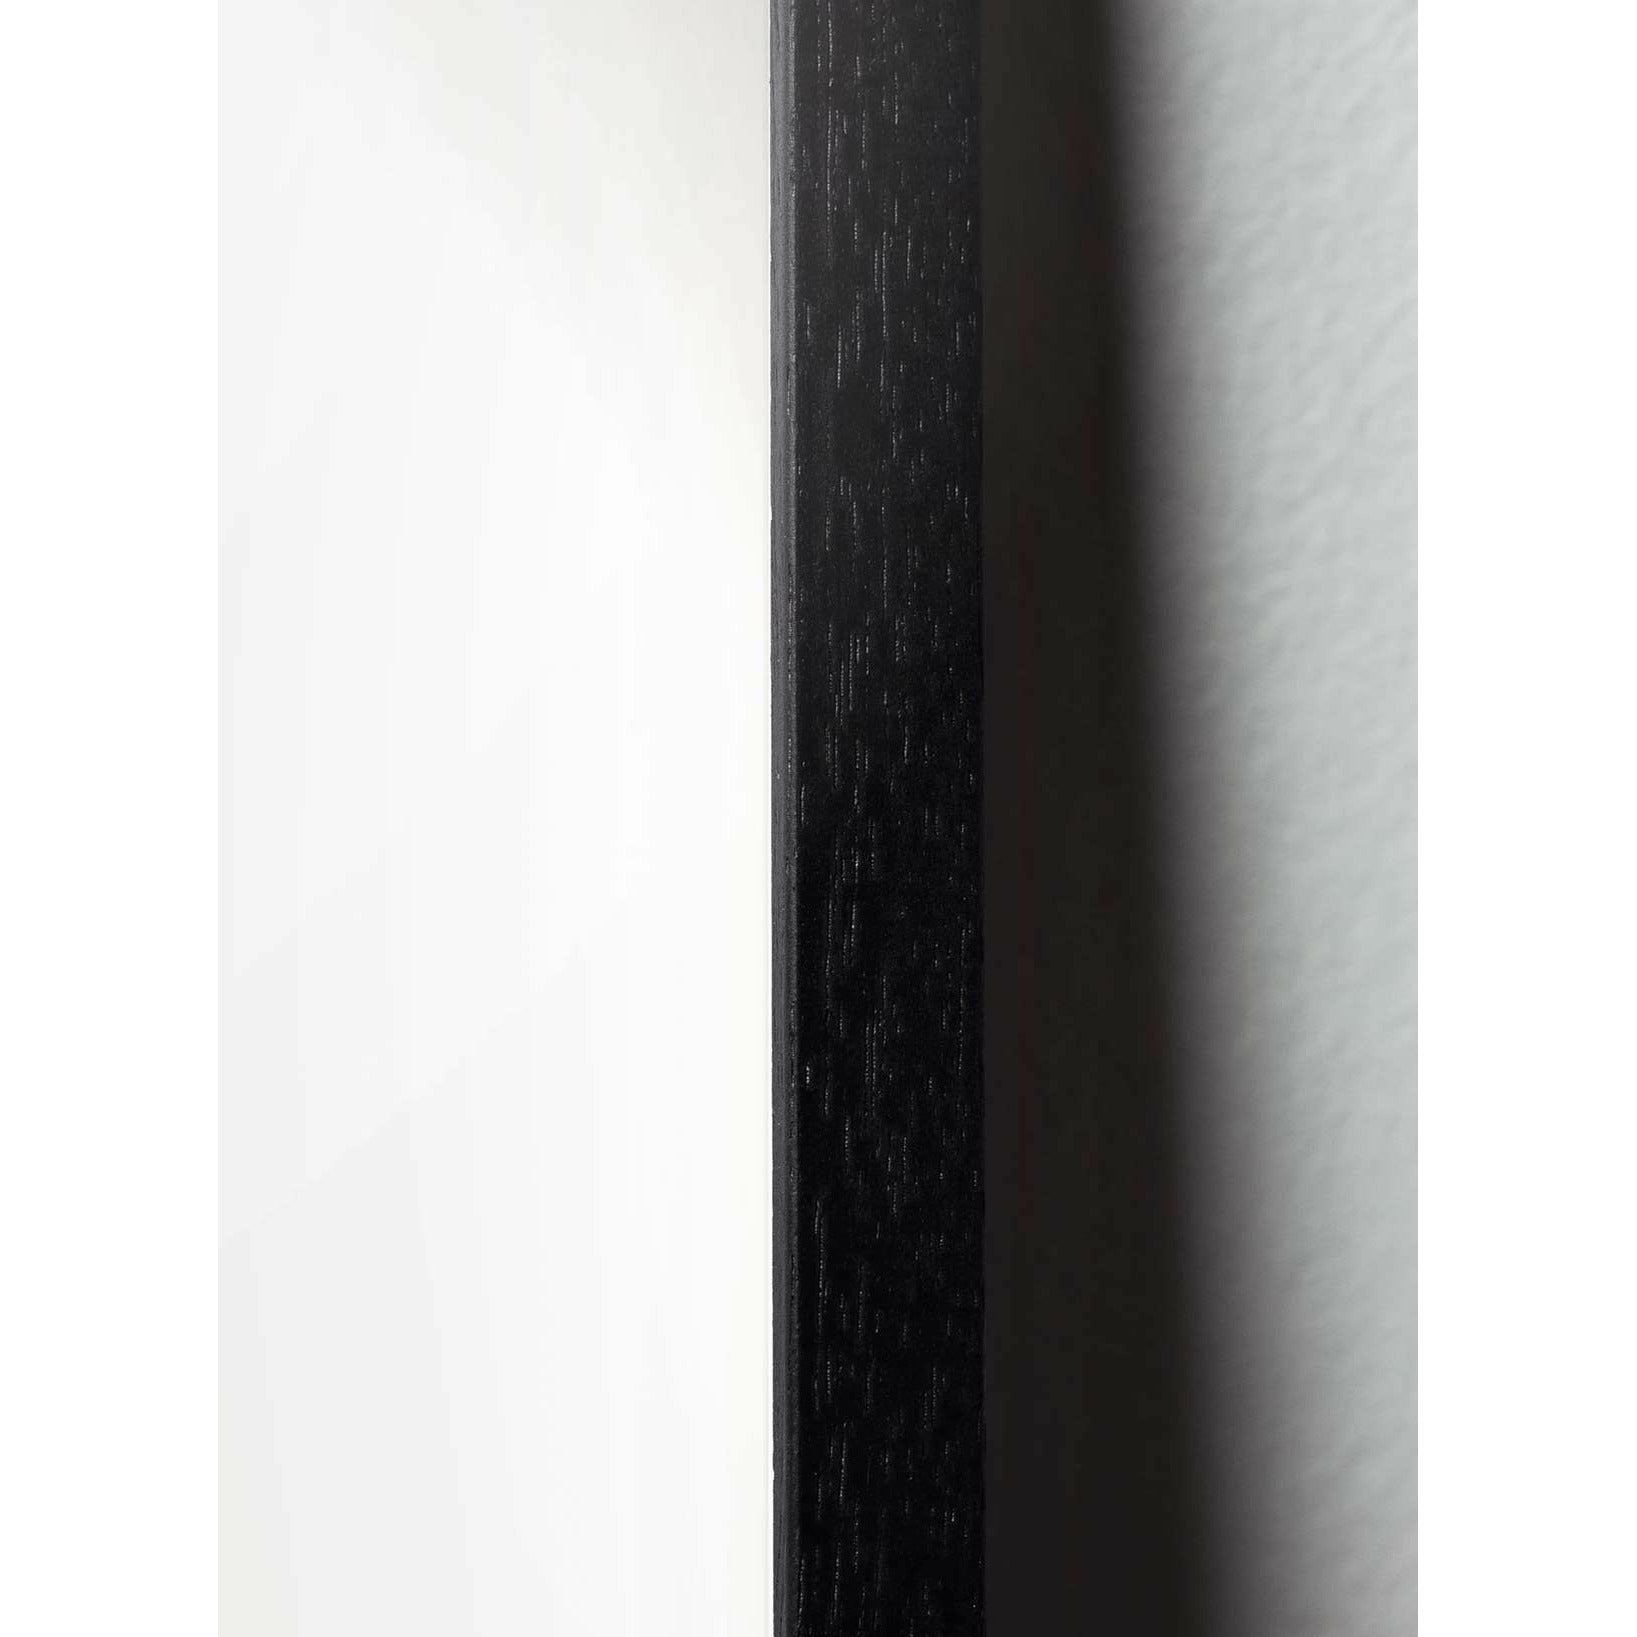 Póster de icono de diseño de hormigas de creación, marco hecho de madera lacada negra de 30x40 cm, gris